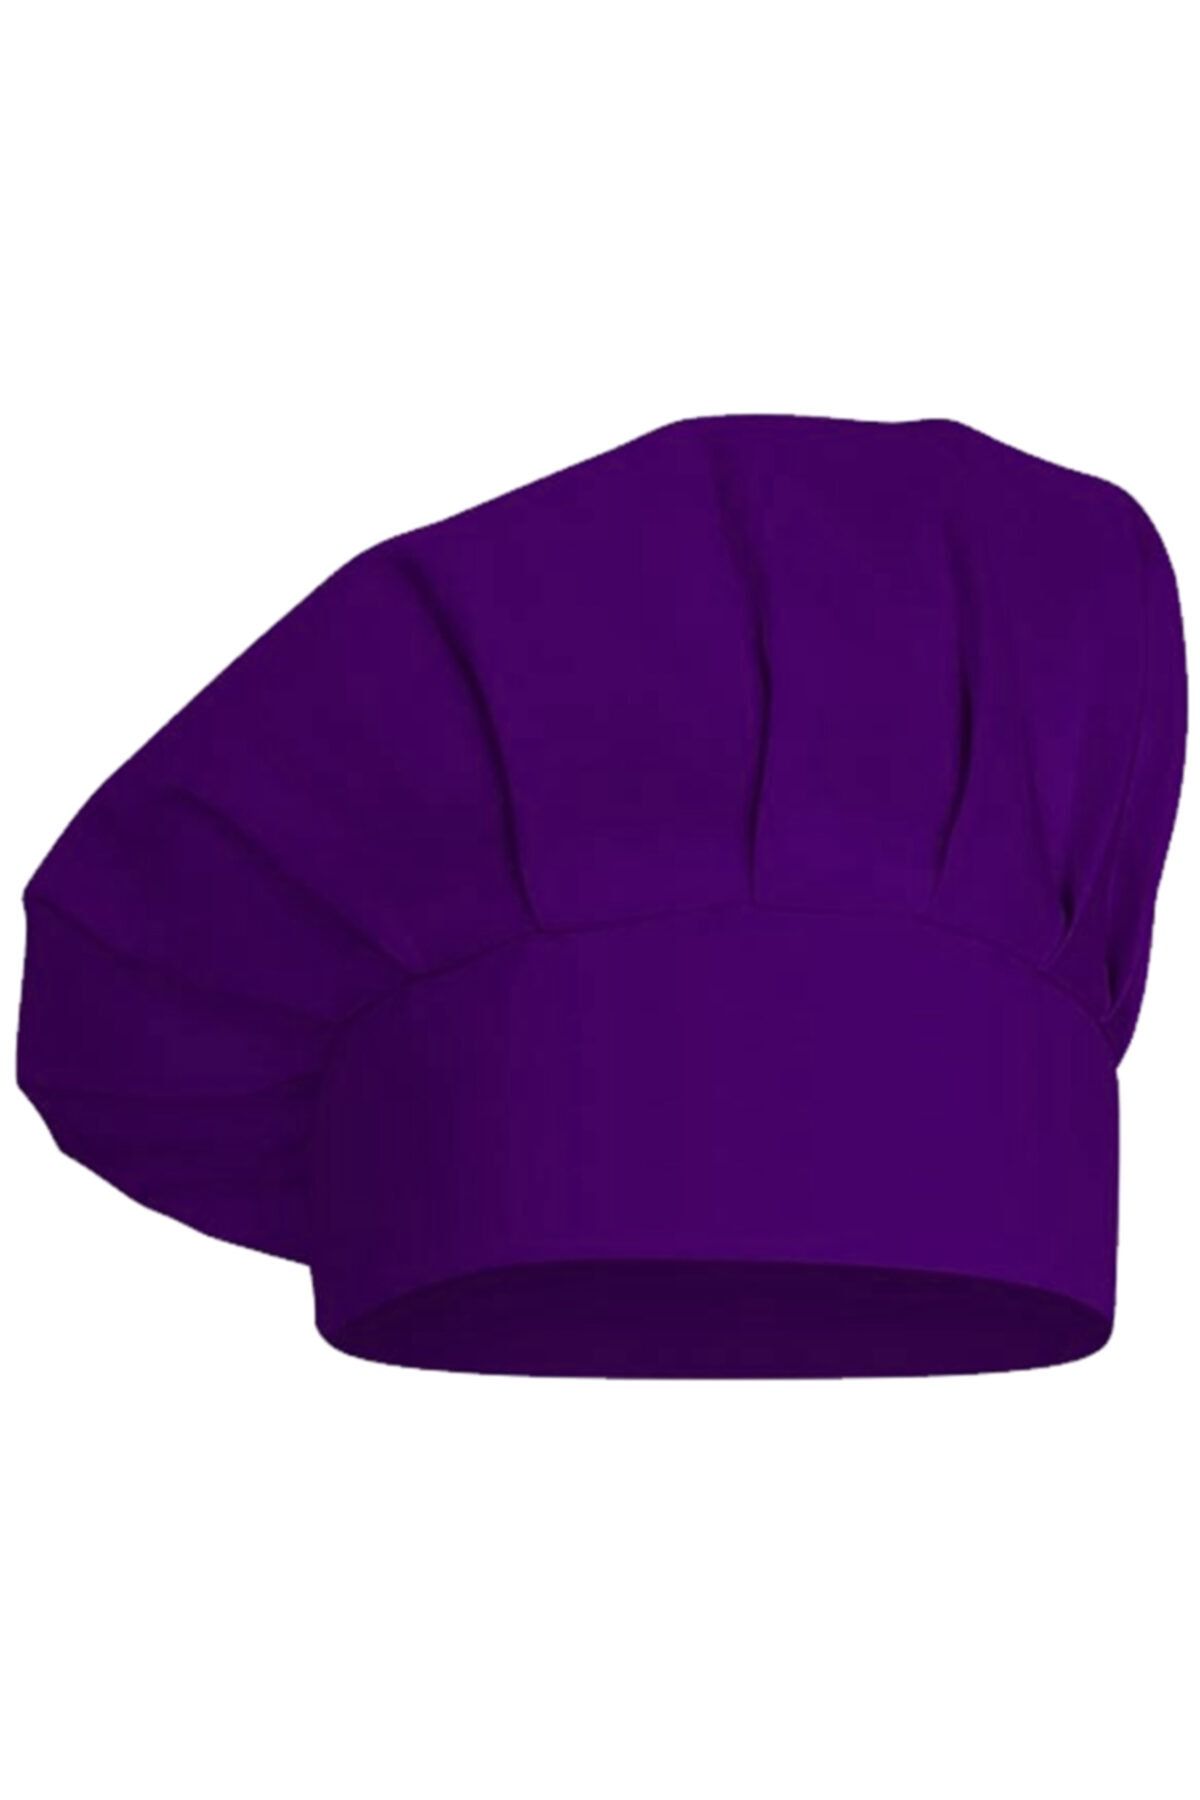 medusaforma Mor Aşçı Şapkası Mutfak Şef Mantar Kep